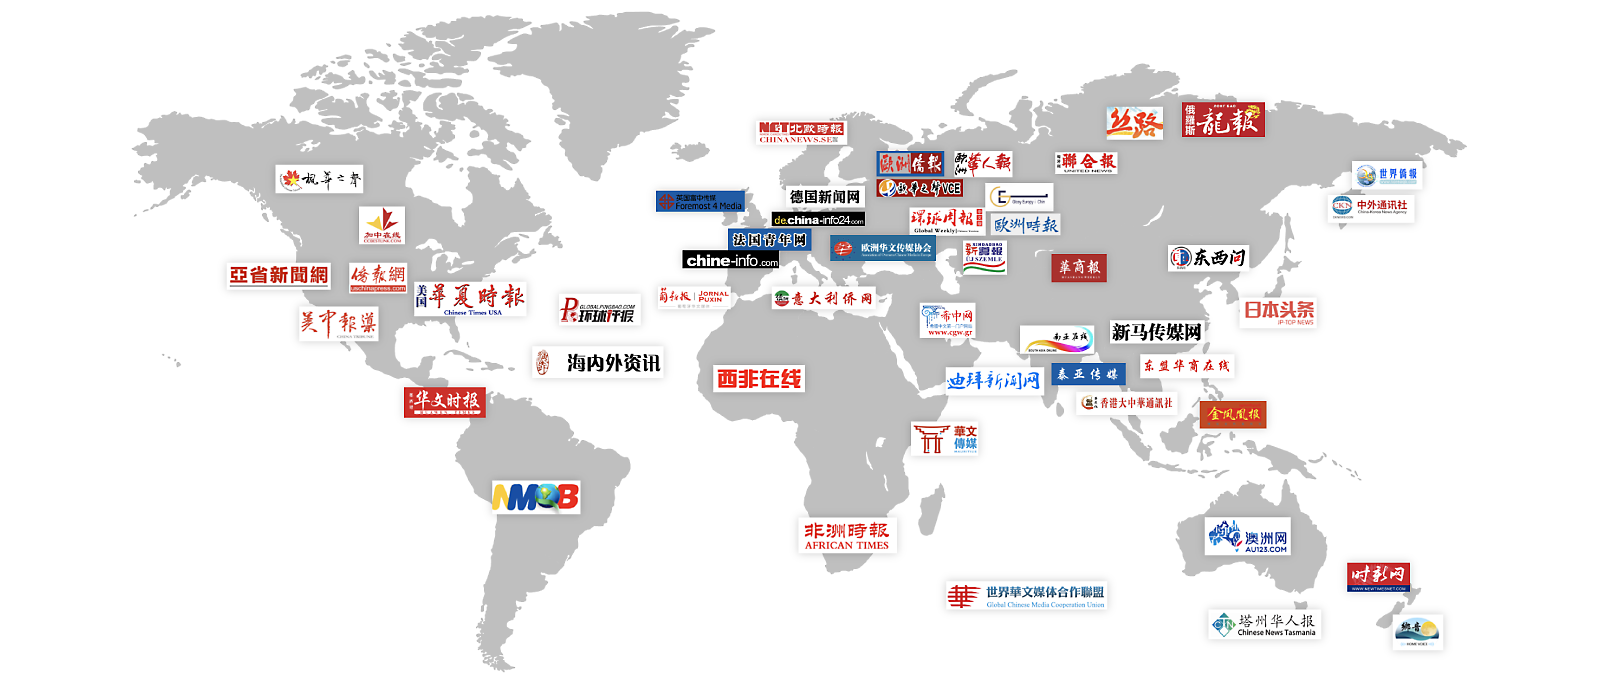 Weltkarte mit mehr als 20 Logos chinesischer Websites, die auf die chinesische Diaspora weltweit abzielen.